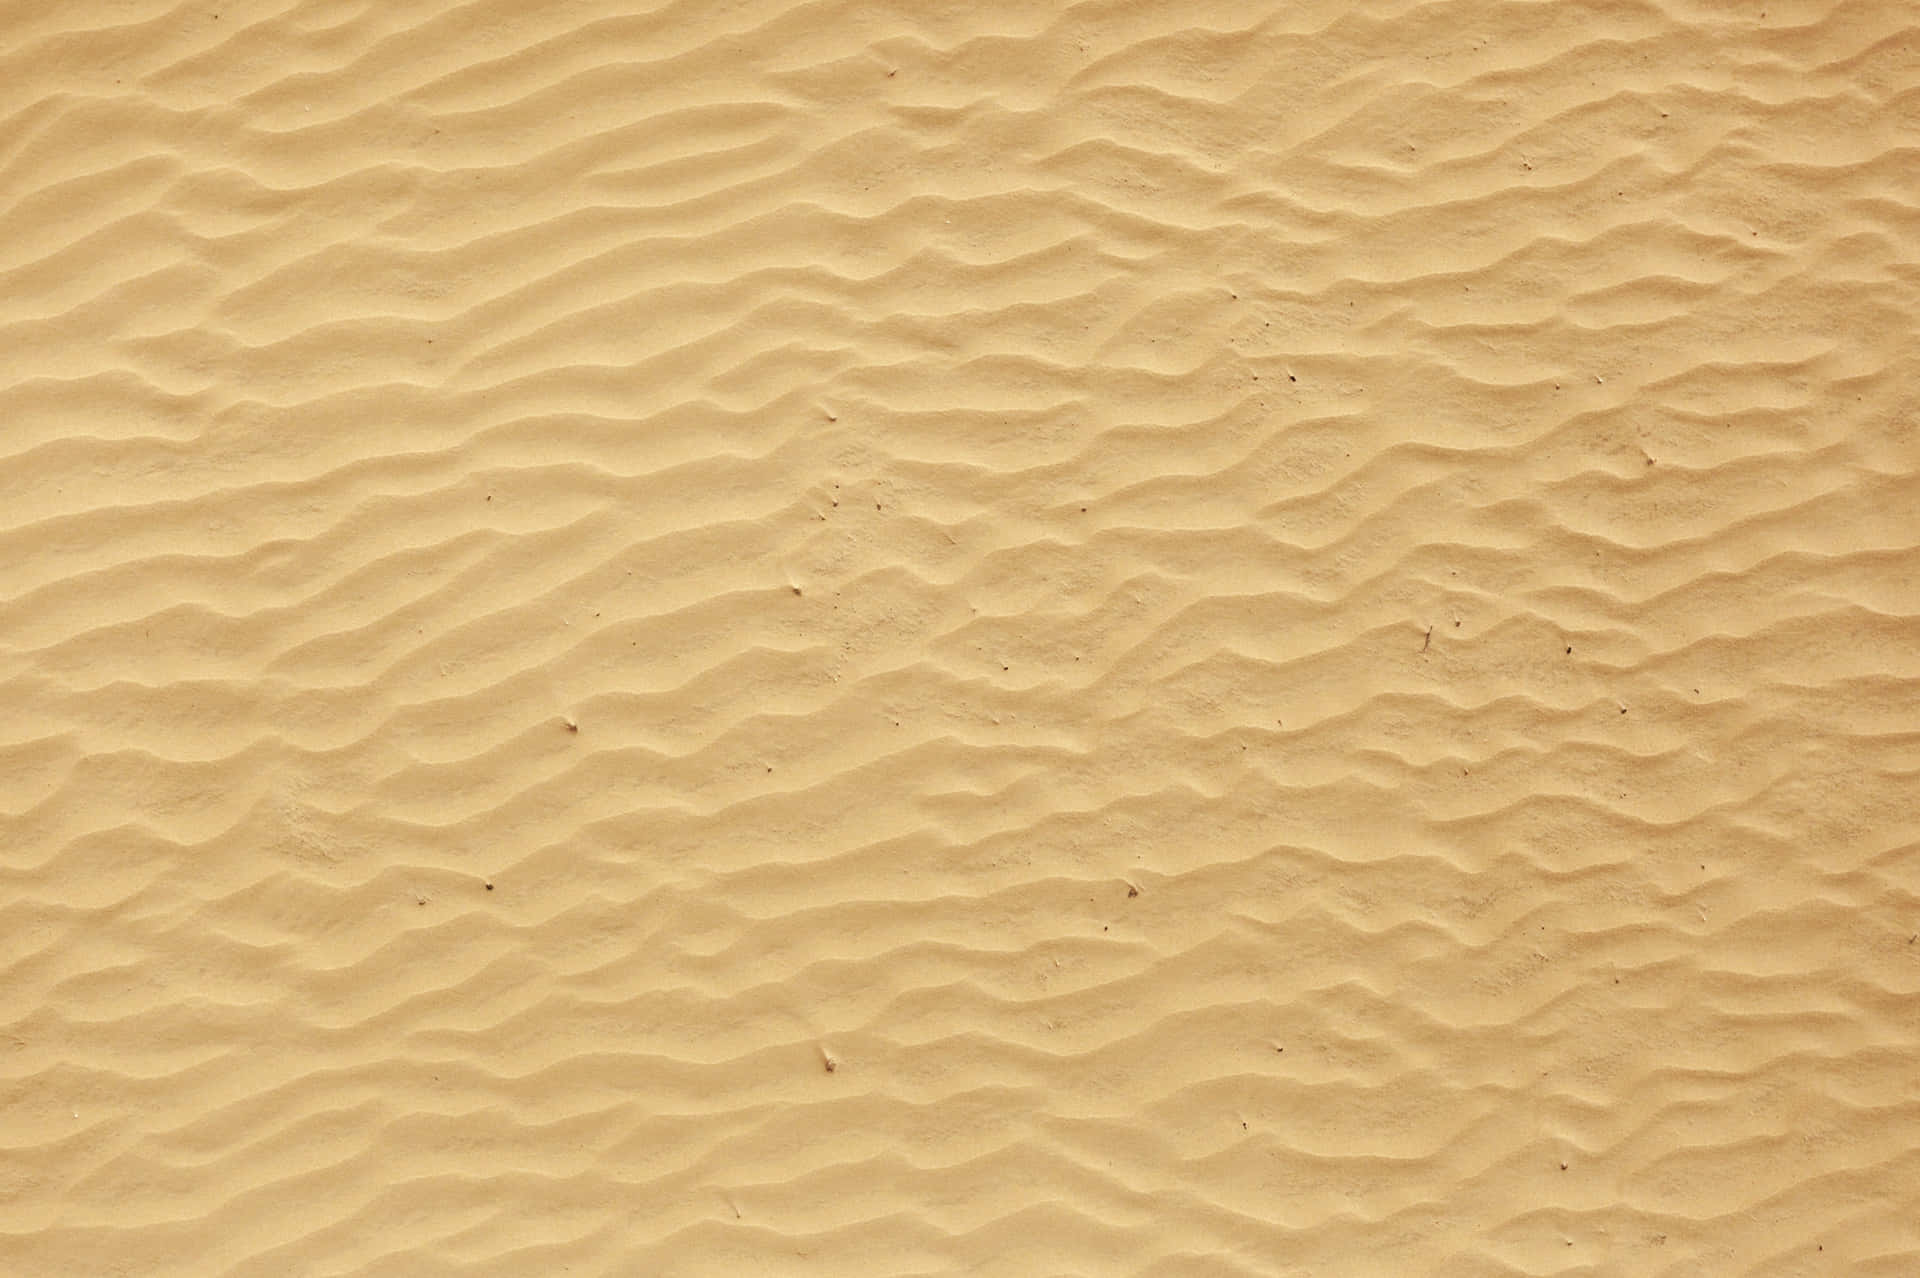 Arenablanca En Una Playa Arenosa Al Amanecer